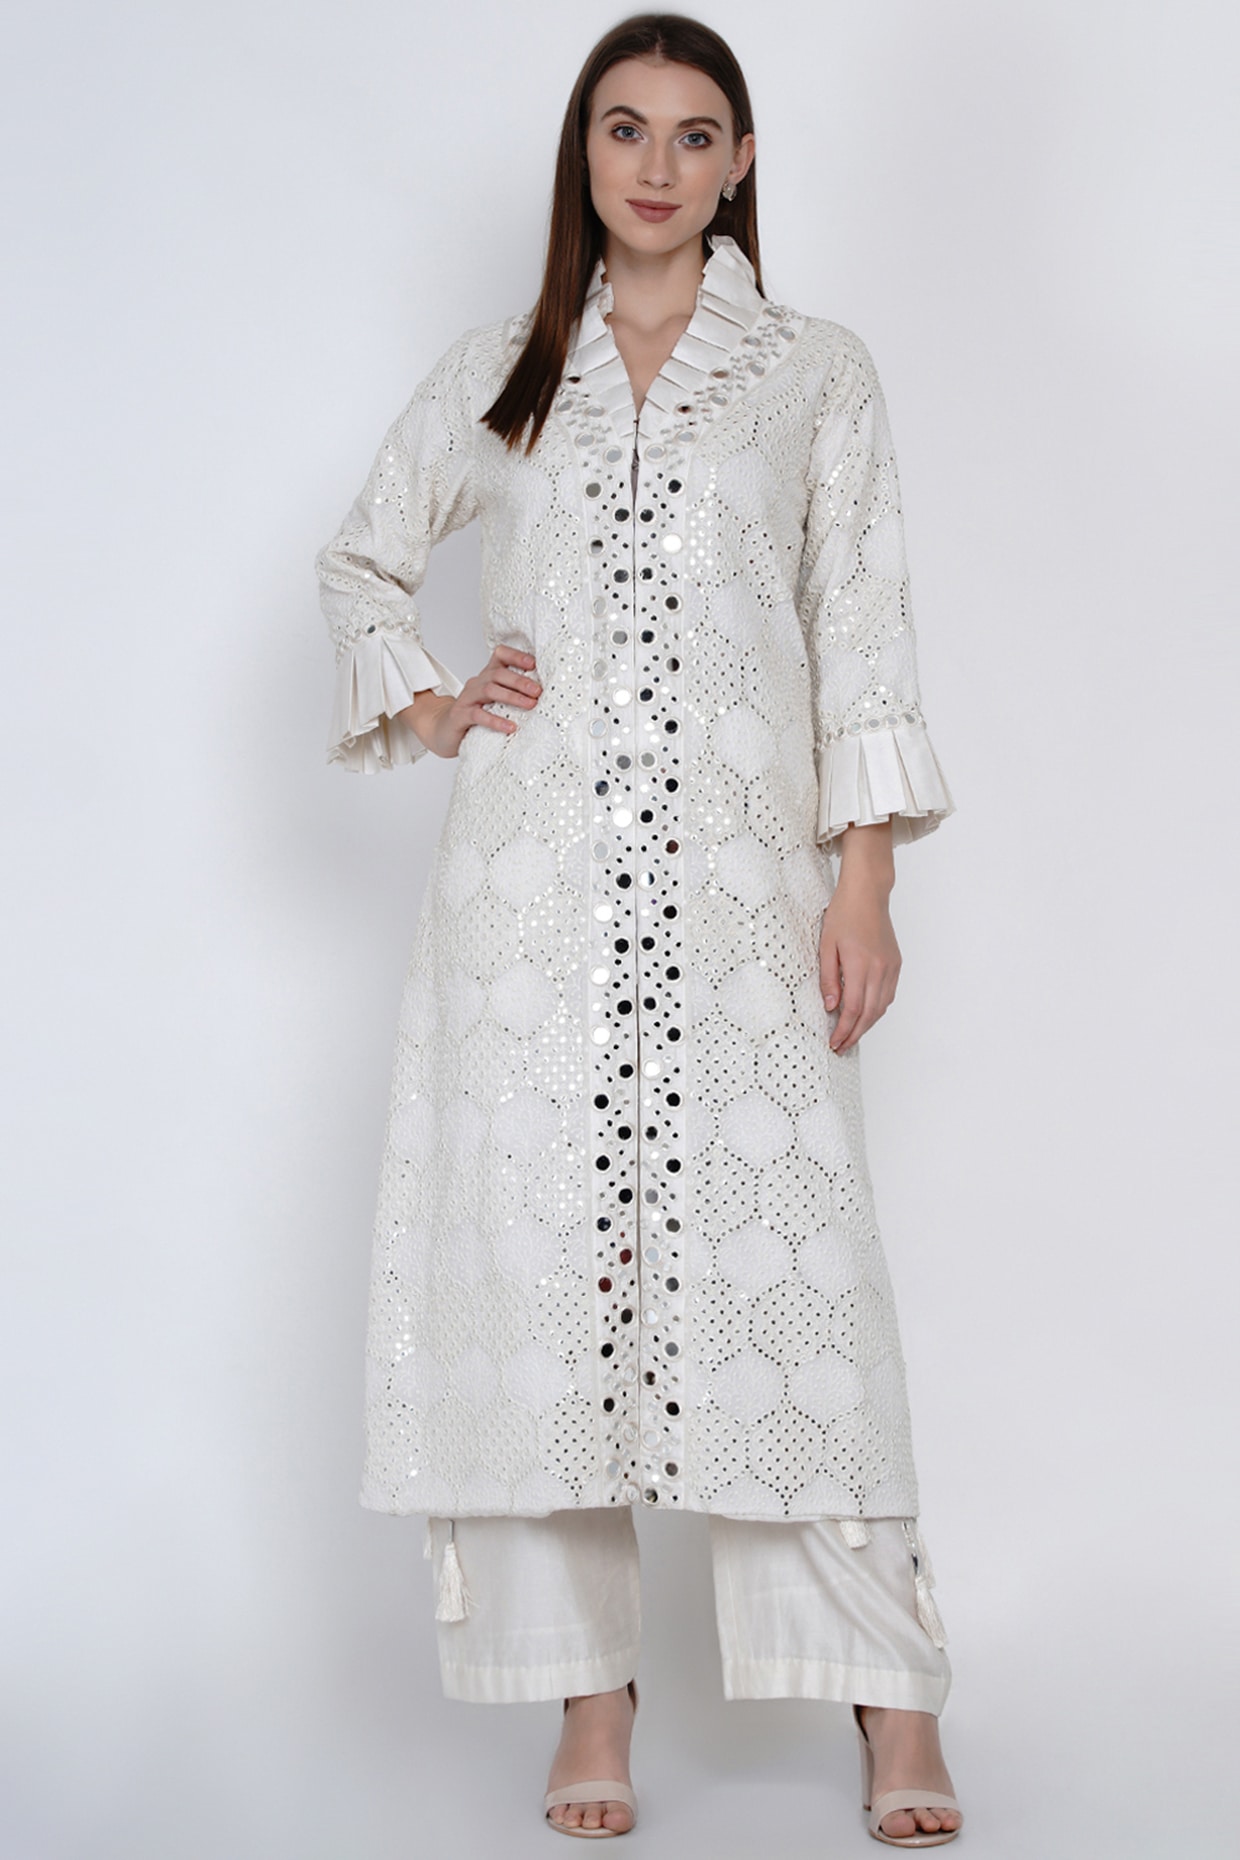 Ladies fashion banjara jackets-Vintage Embroidery Mirror| Alibaba.com